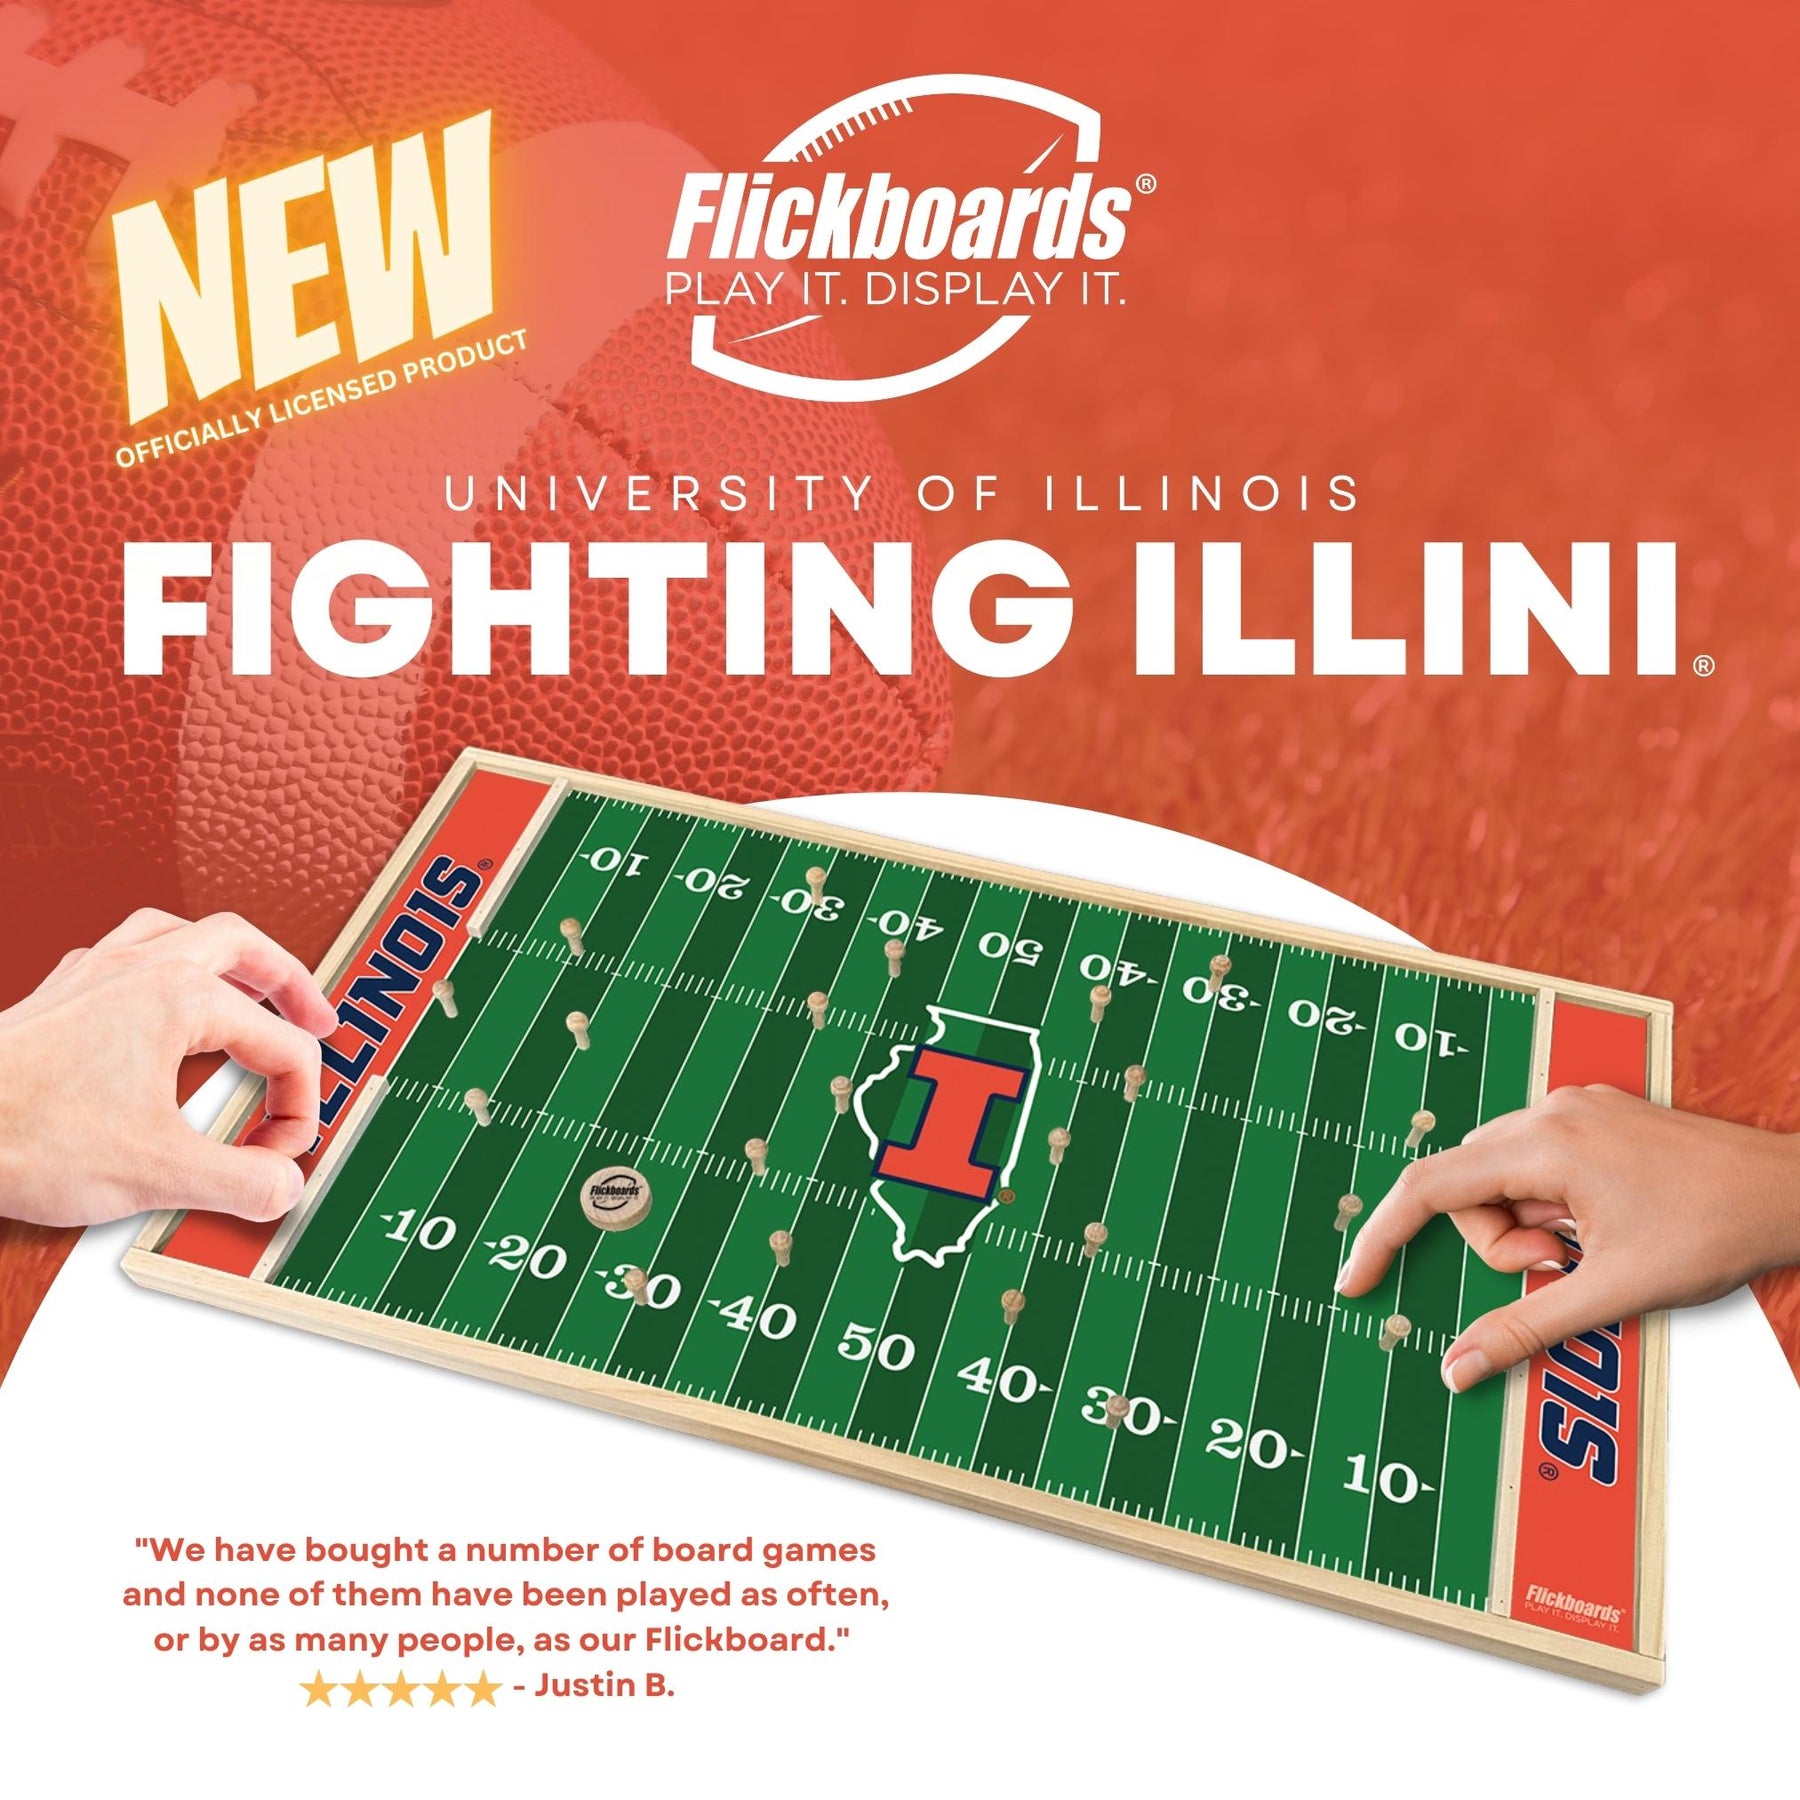 Illinois Fighting Illini Football – Flickboards